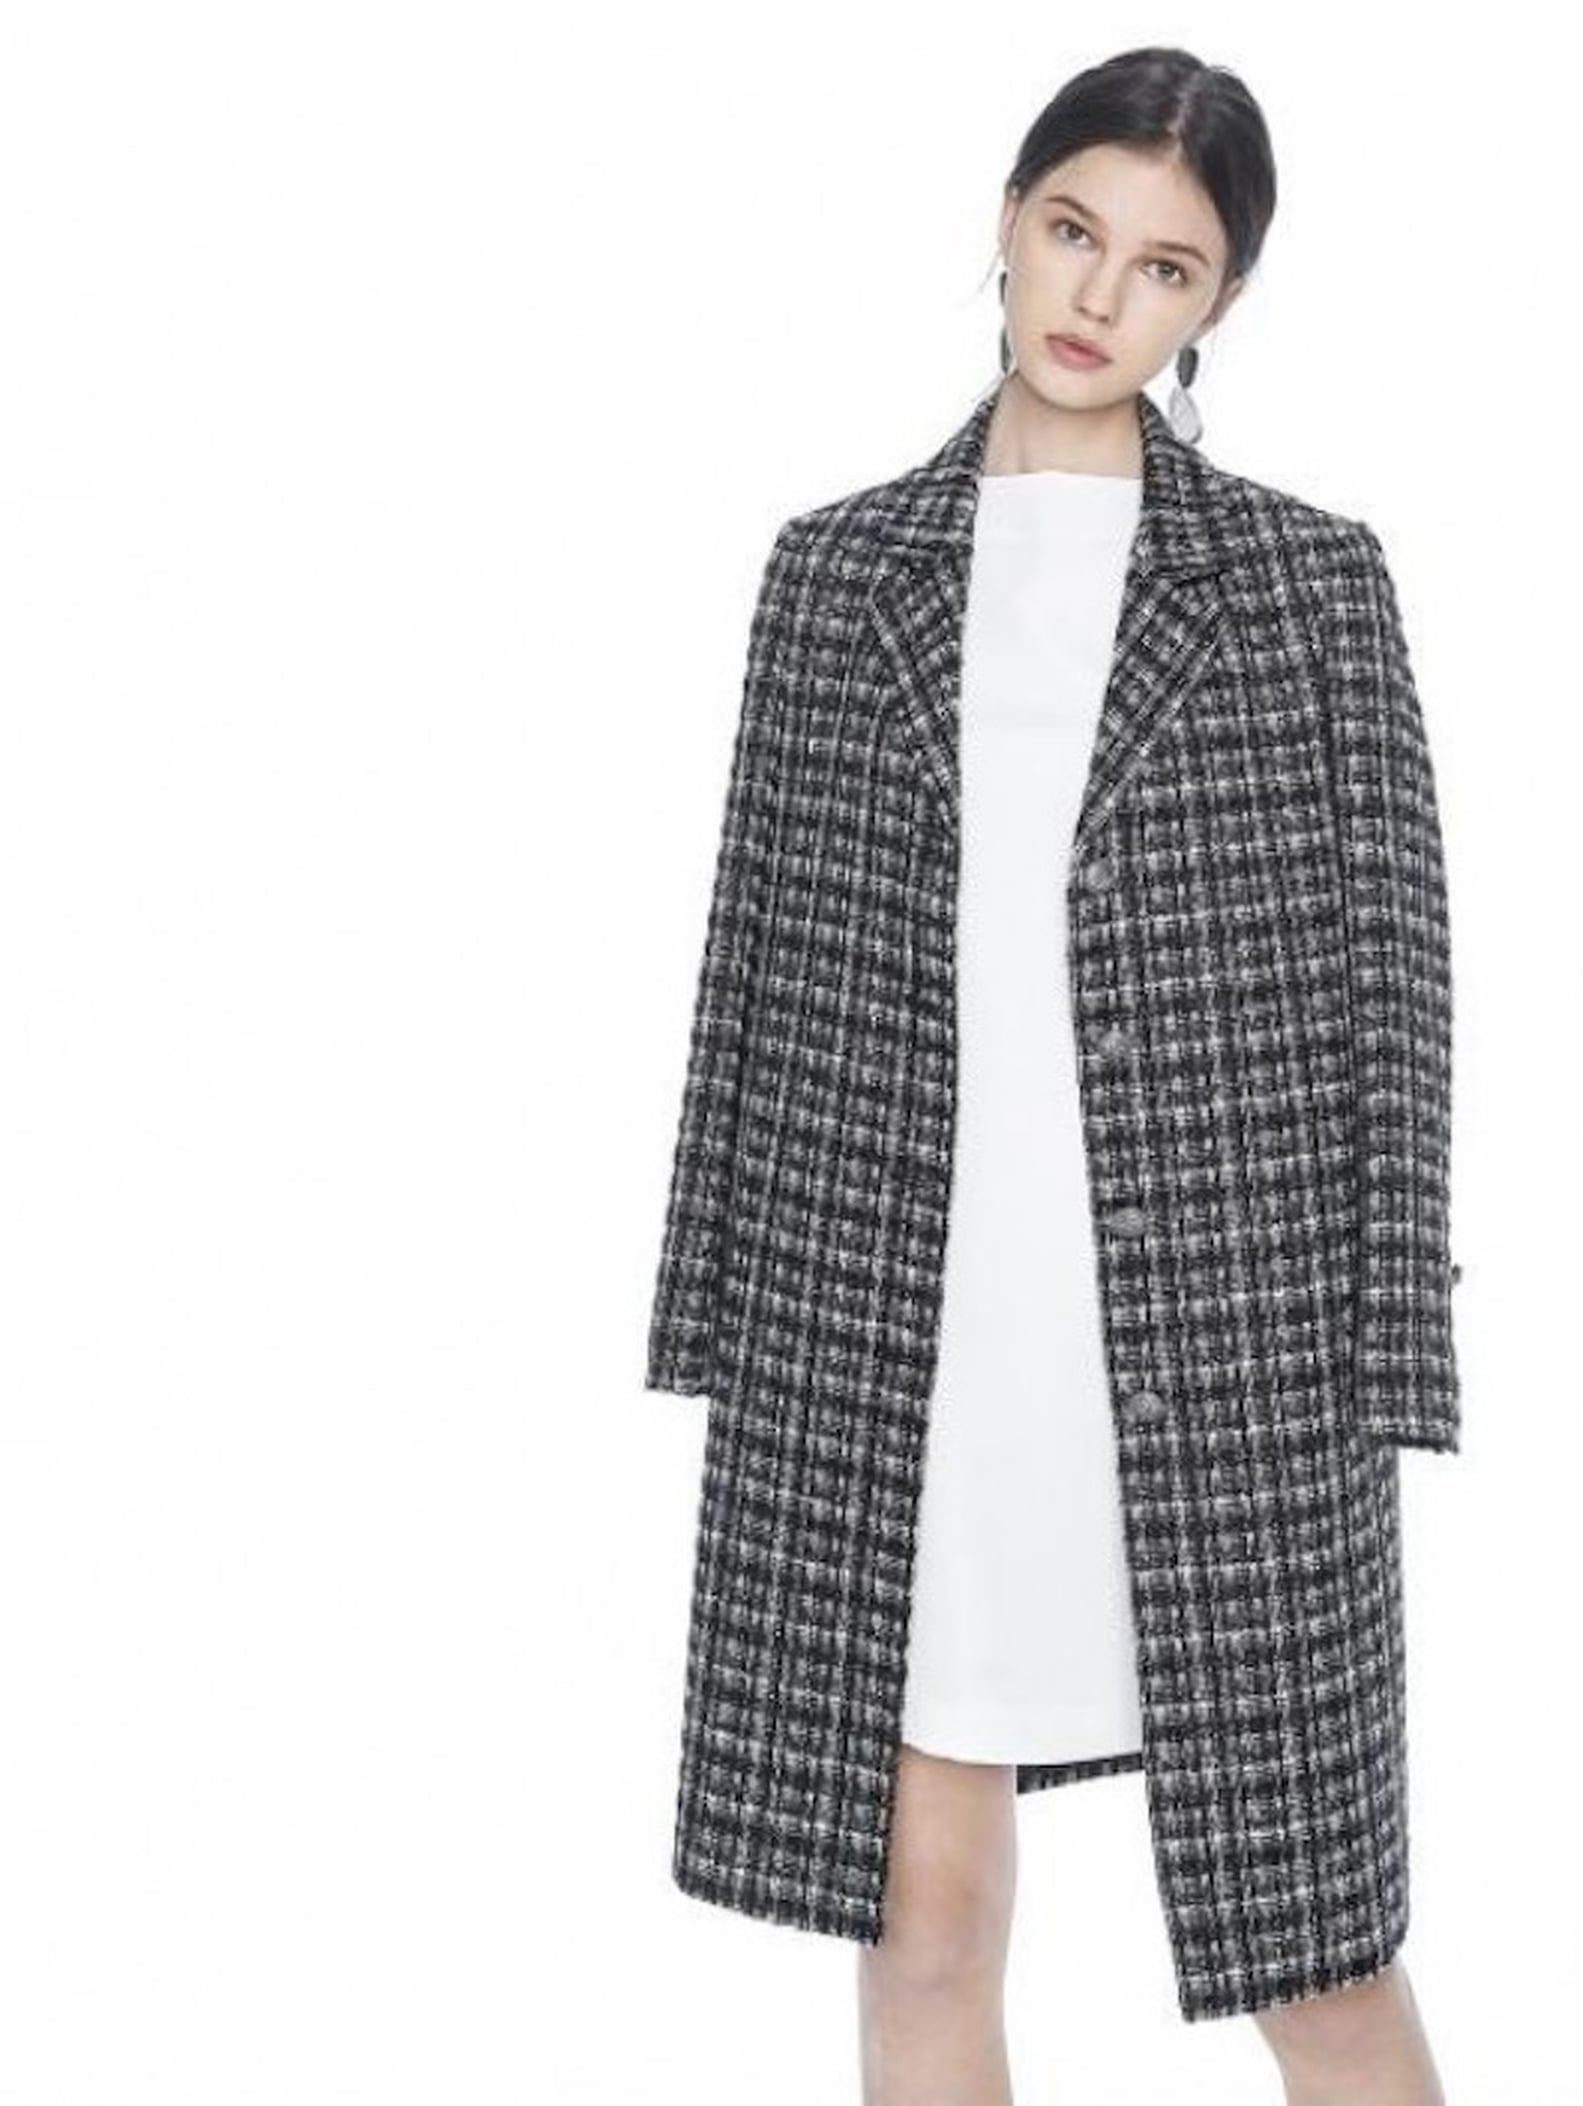 Pippa Middleton Wearing Tweed Coat | POPSUGAR Fashion